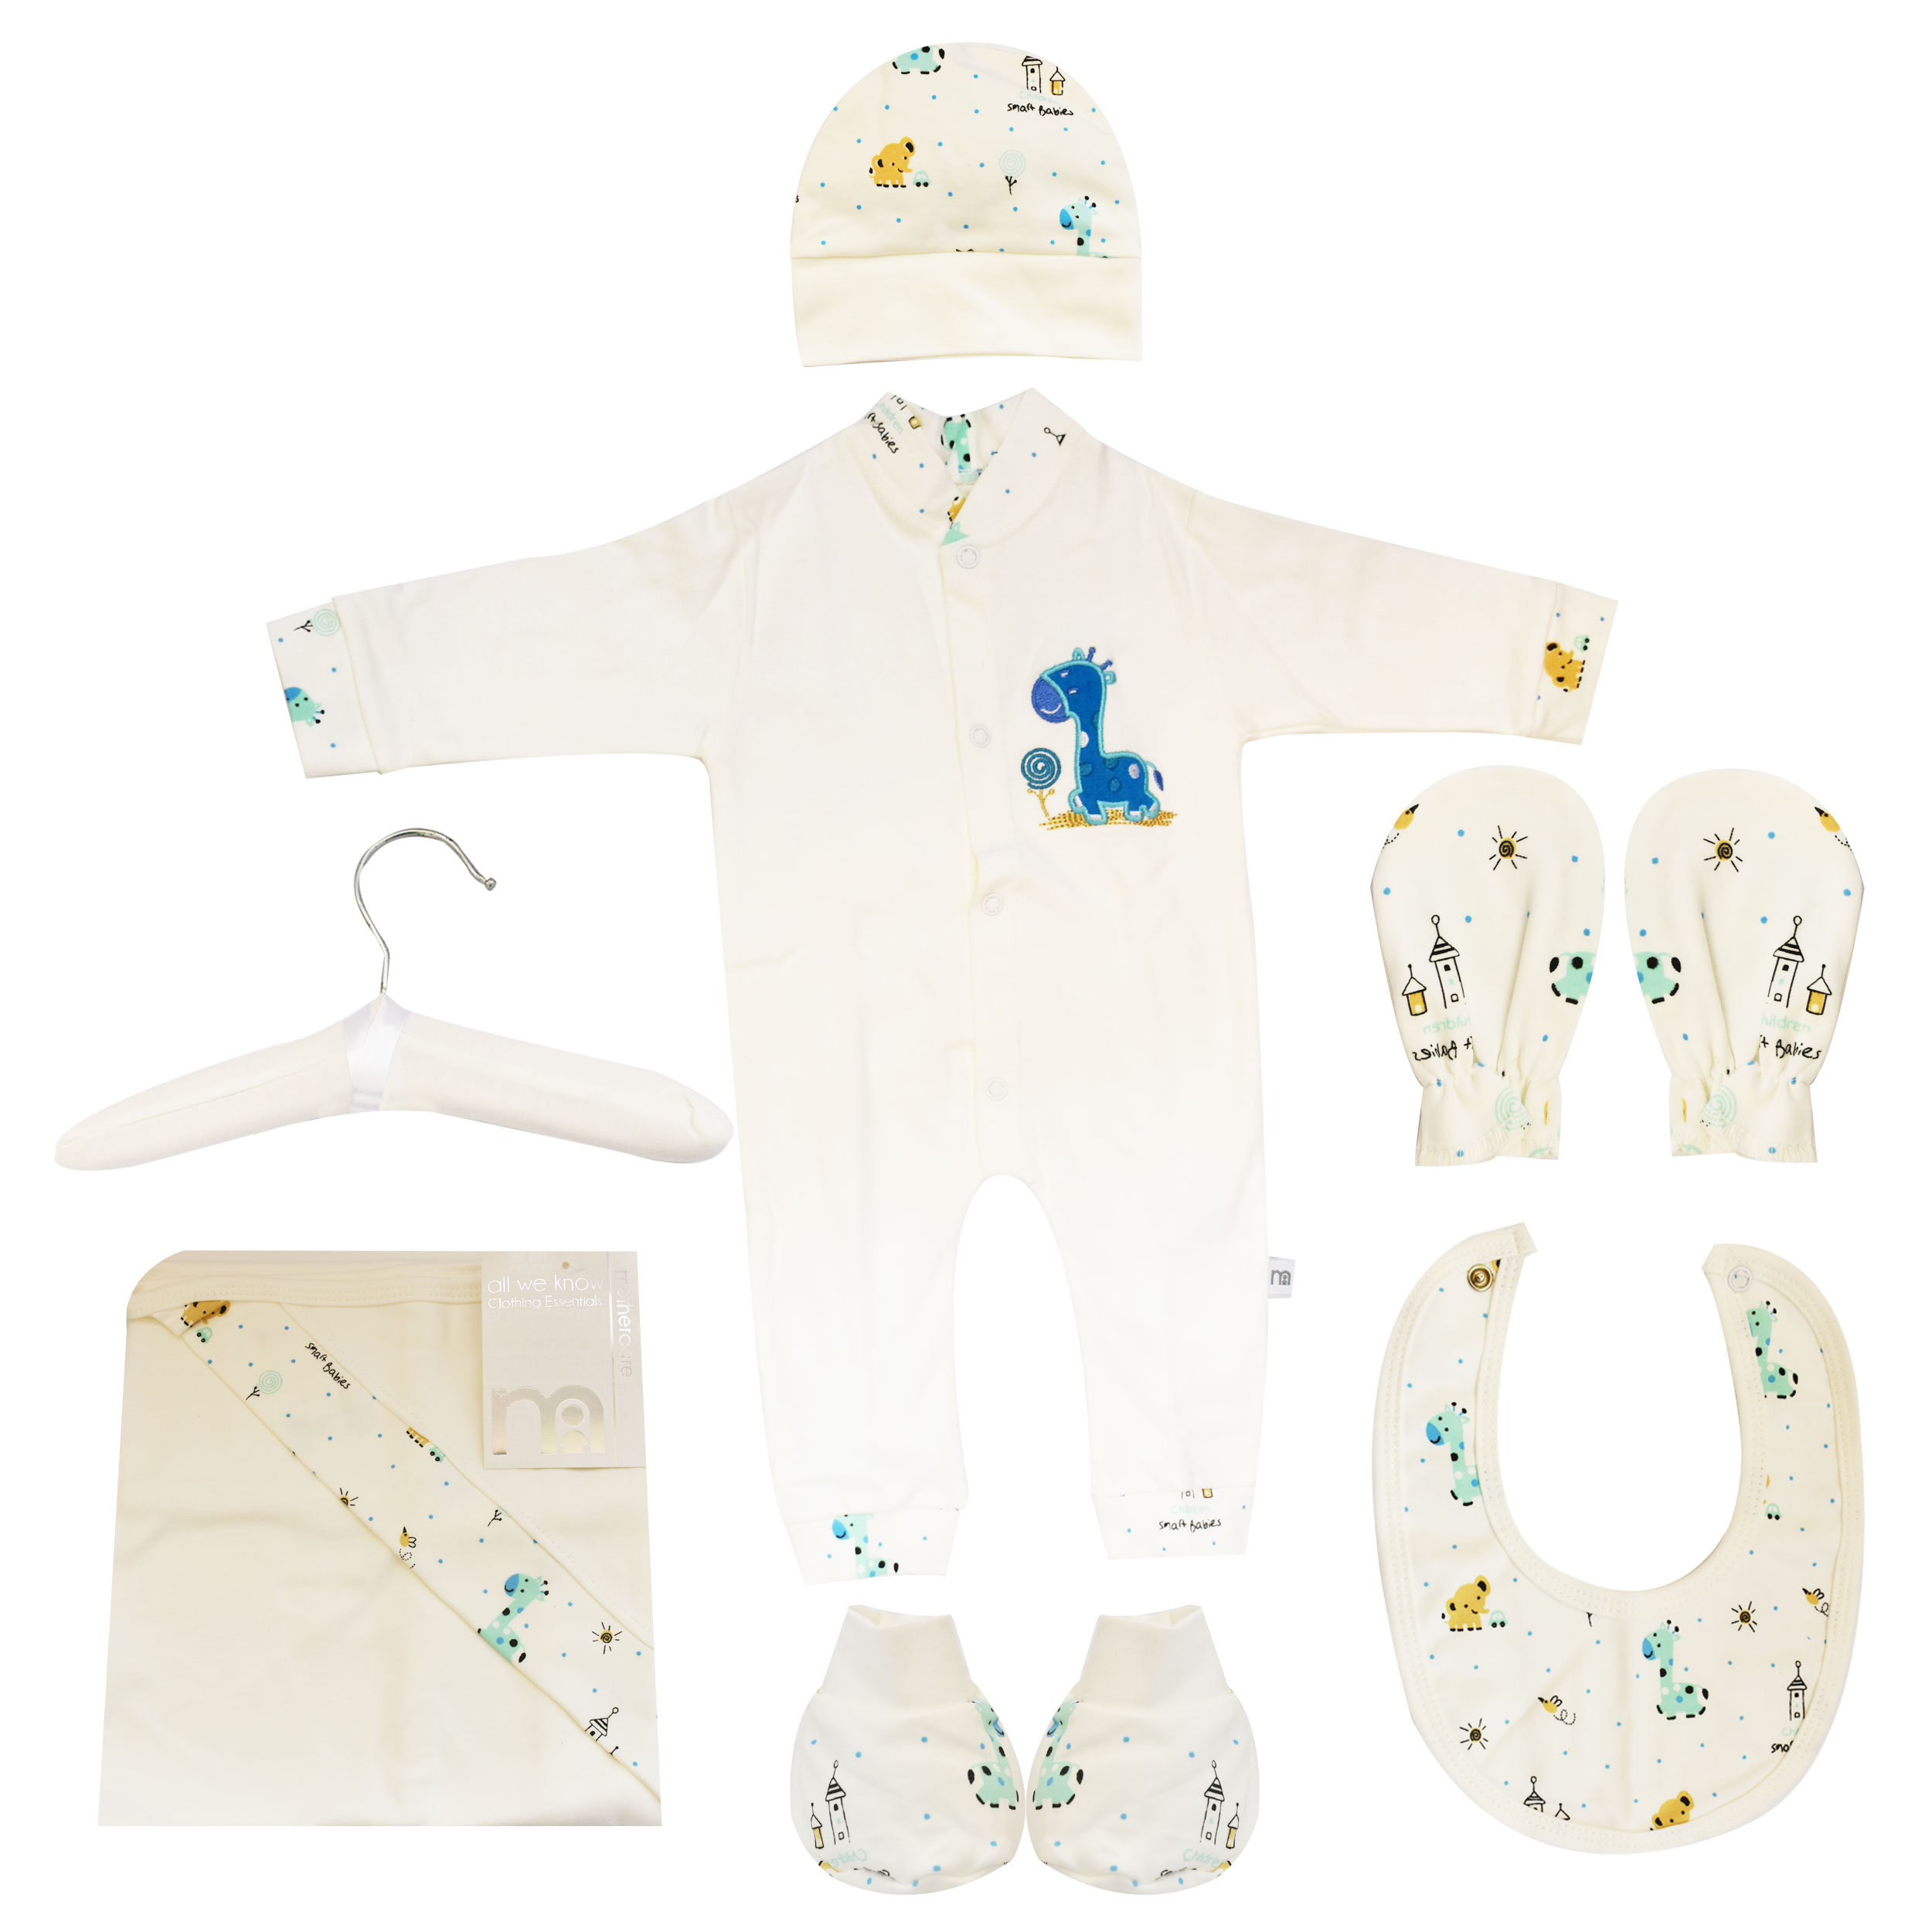  ست 7 تکه لباس نوزادی مادرکر طرح زرافه کد M454.12 -  - 10